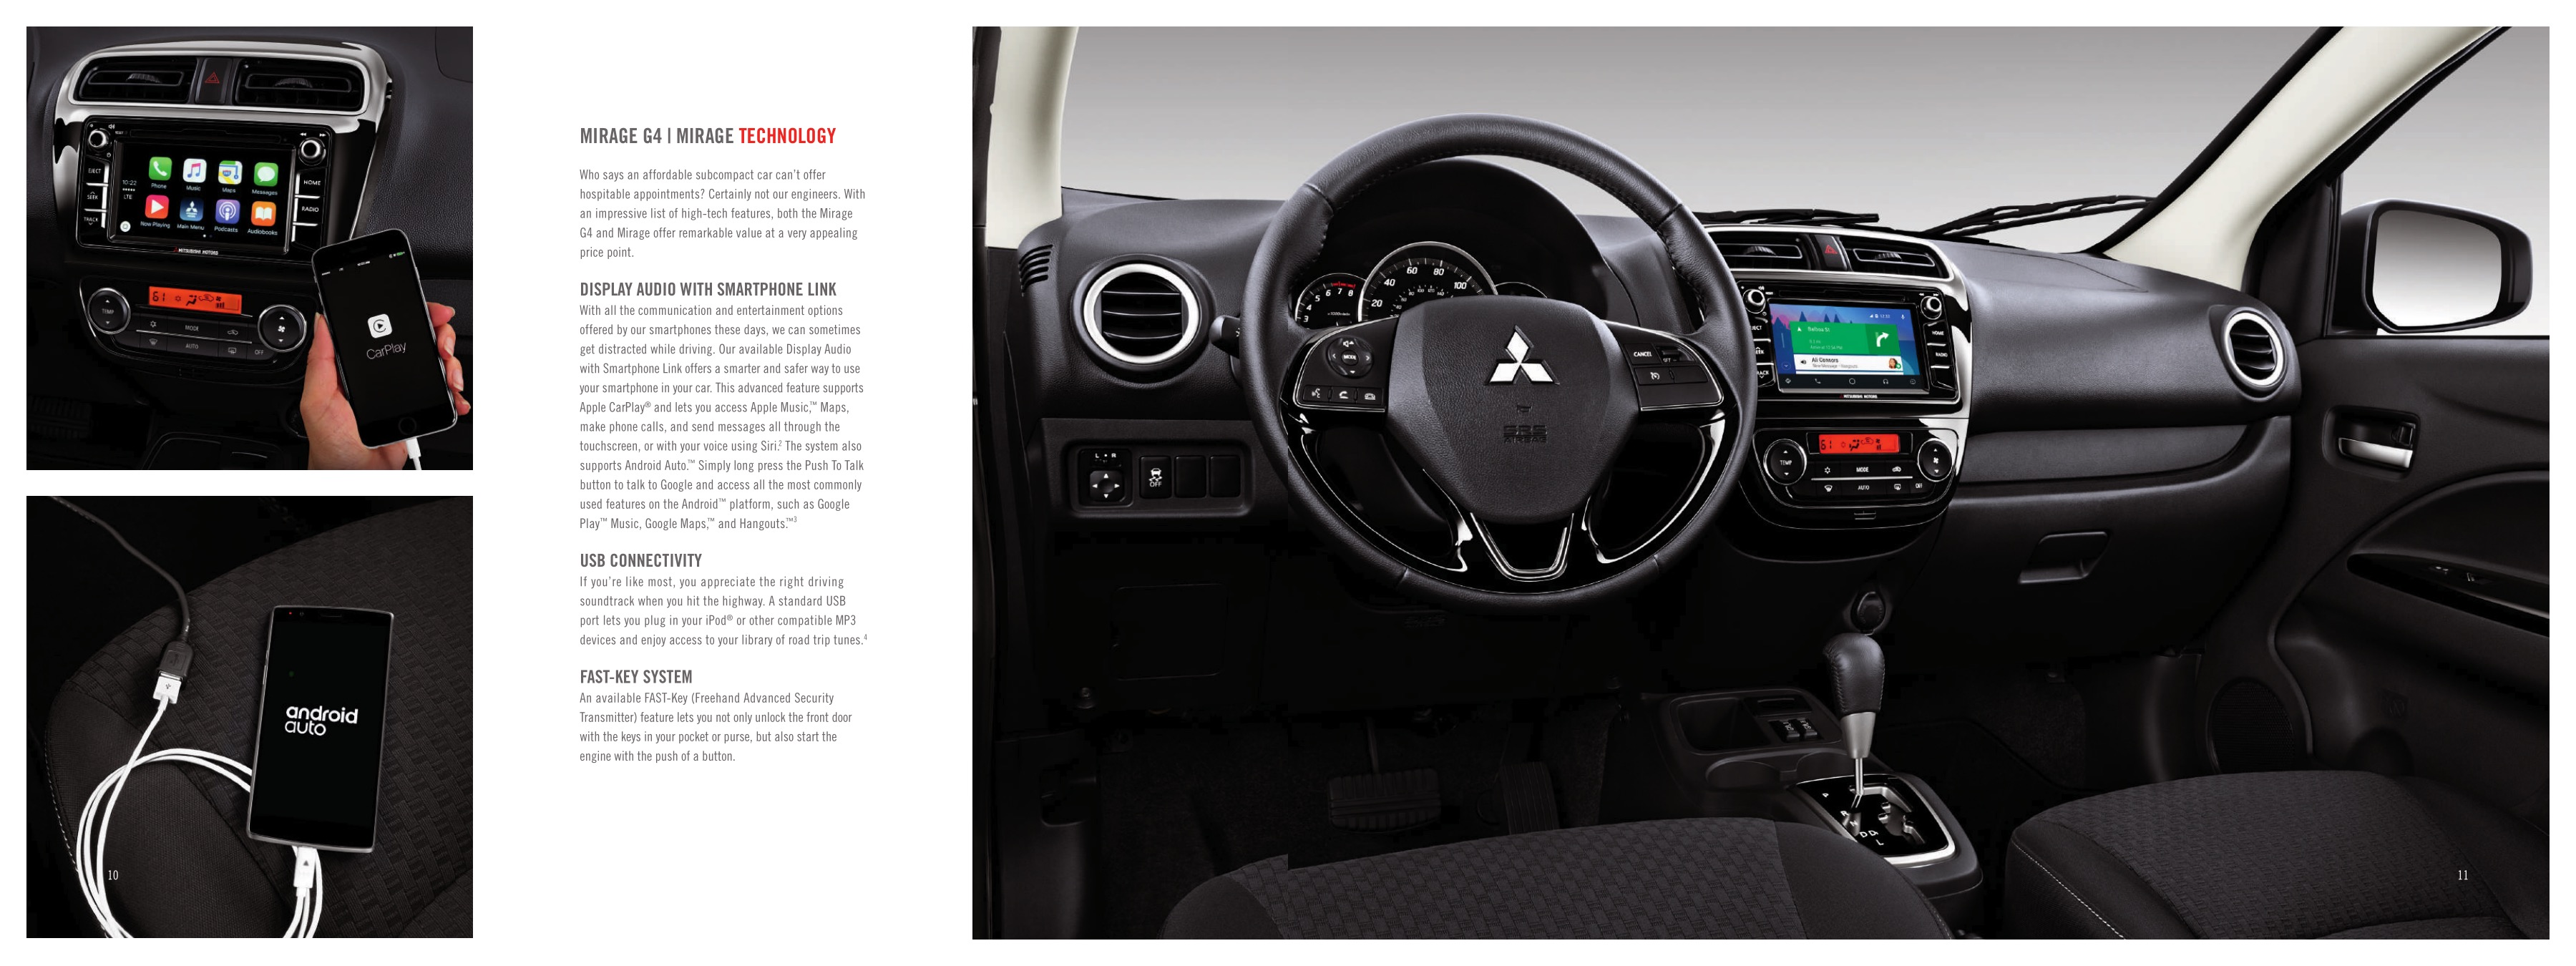 2017 Mitsubishi Mirage Brochure Page 8